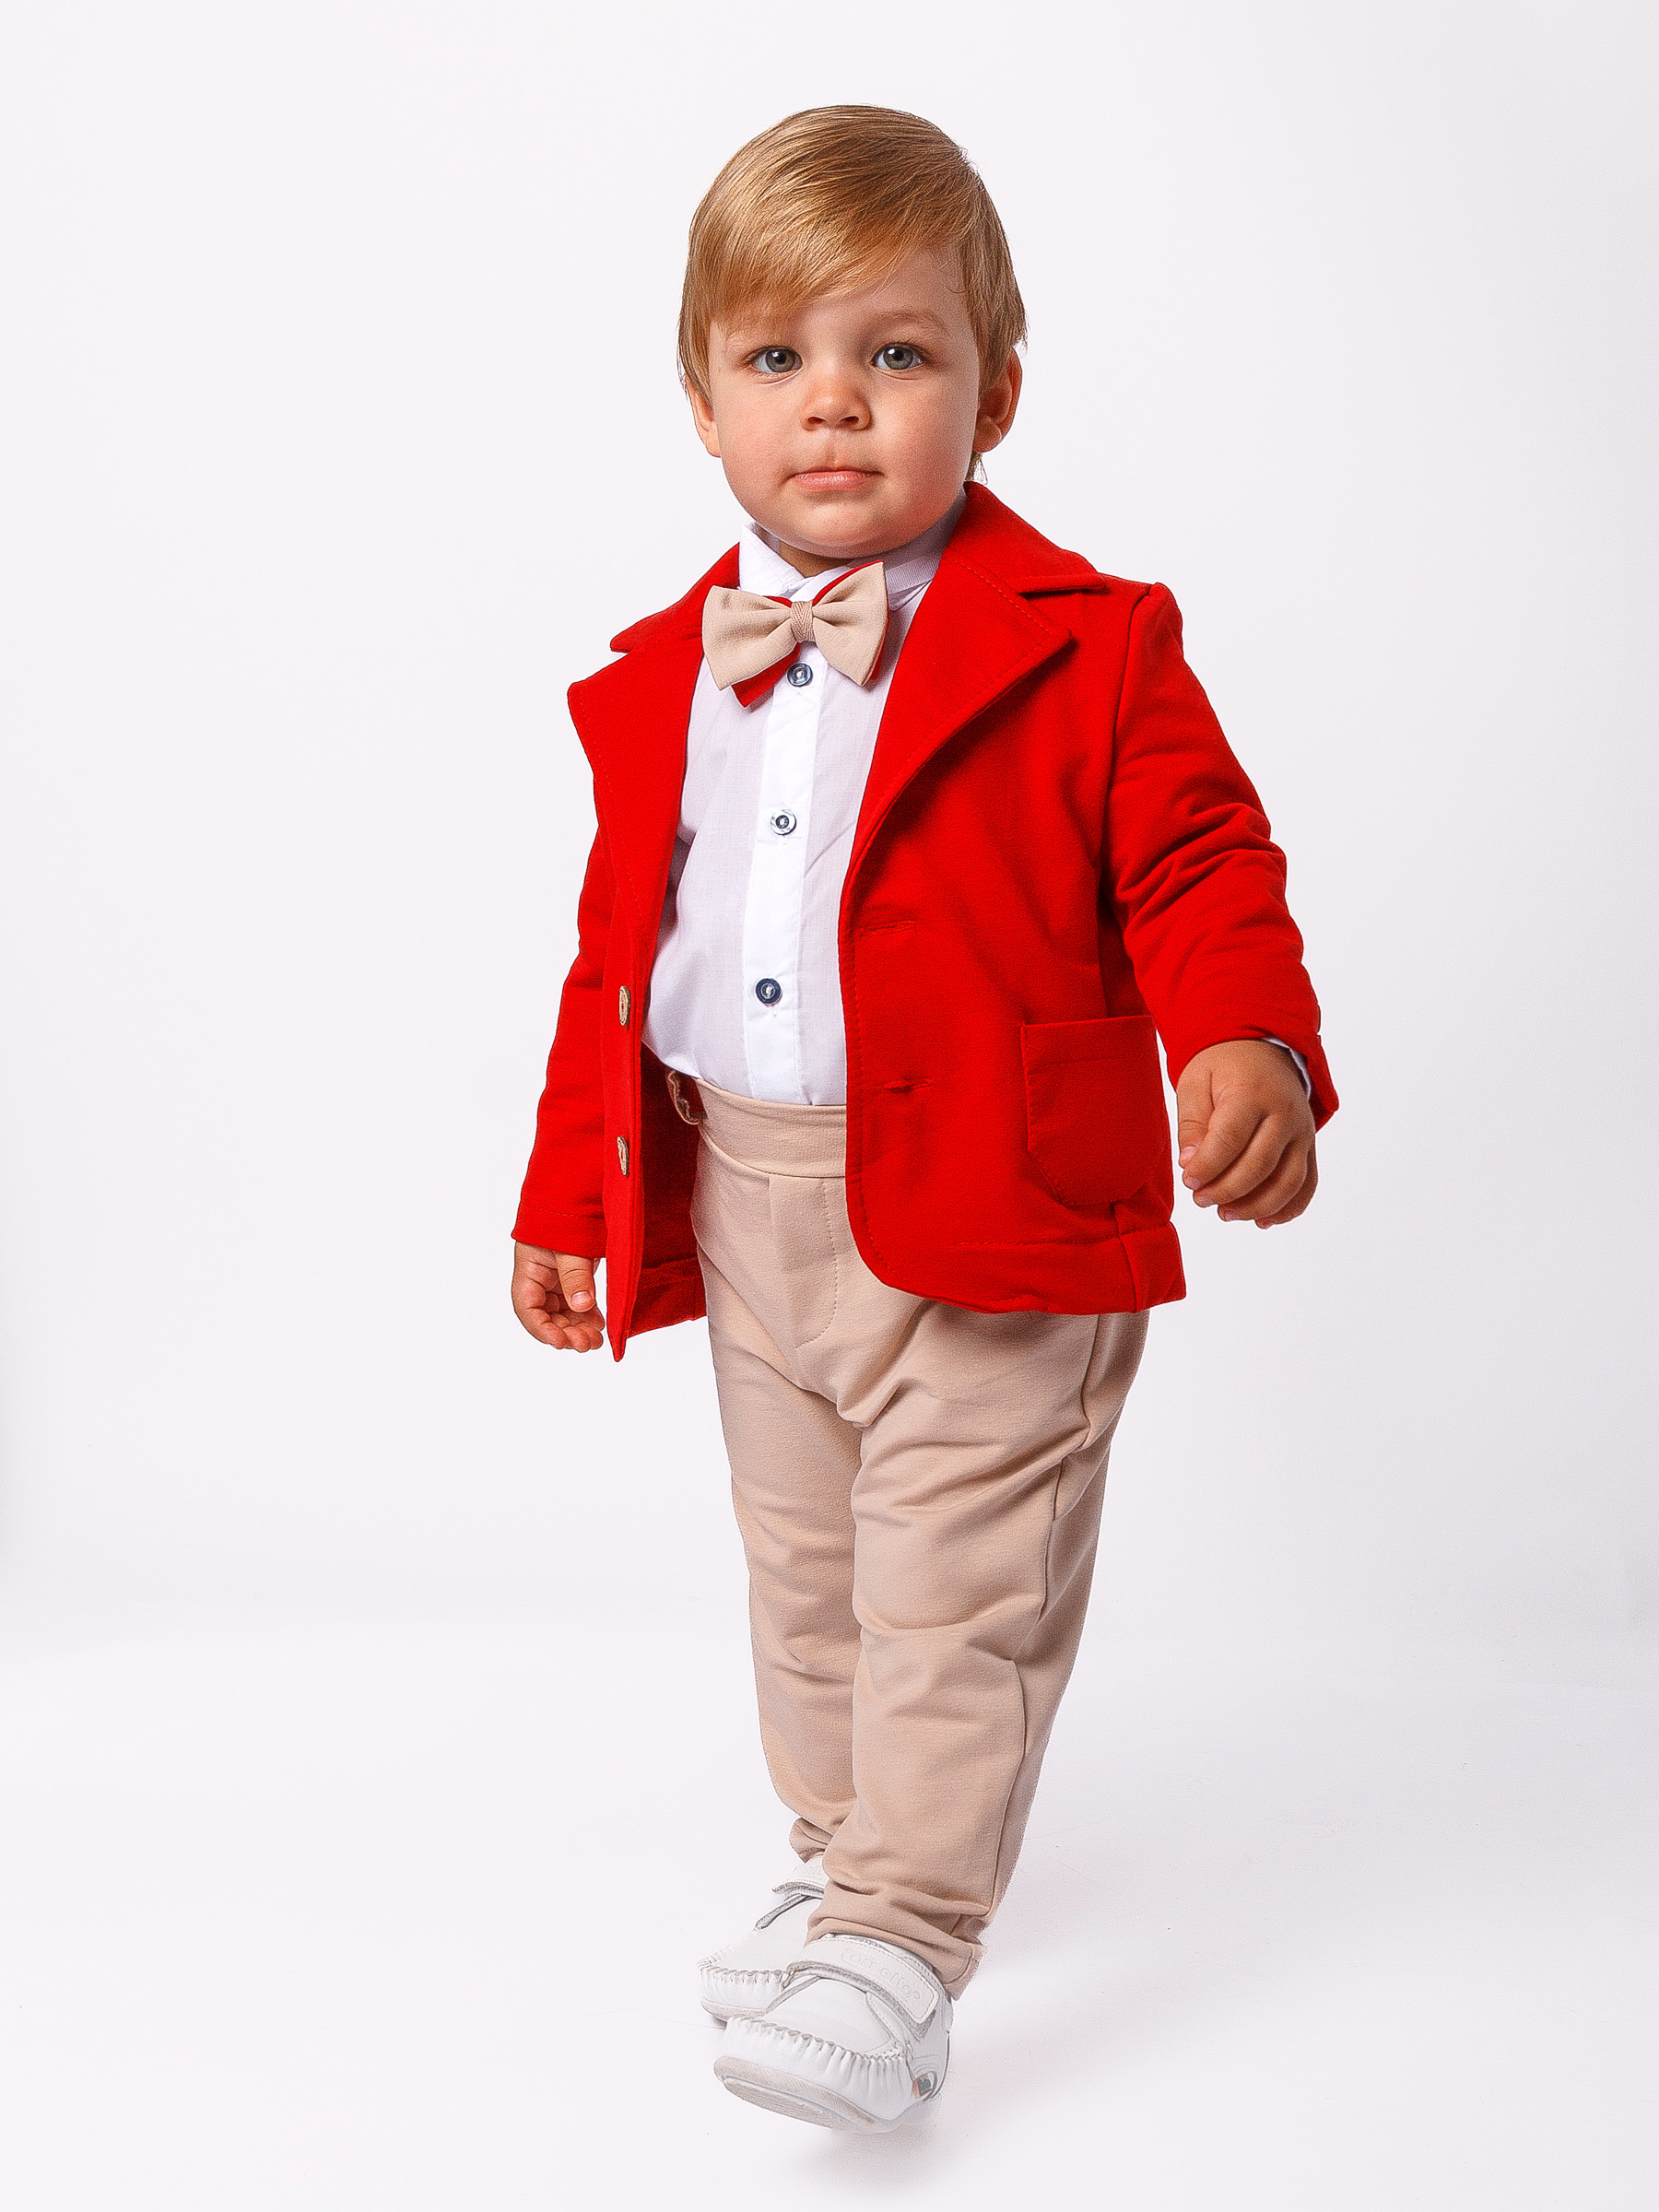 Детский кстюм CHADOLLS Красный пиджак, бежевые брюки, белая рубашка 4598345 р.80